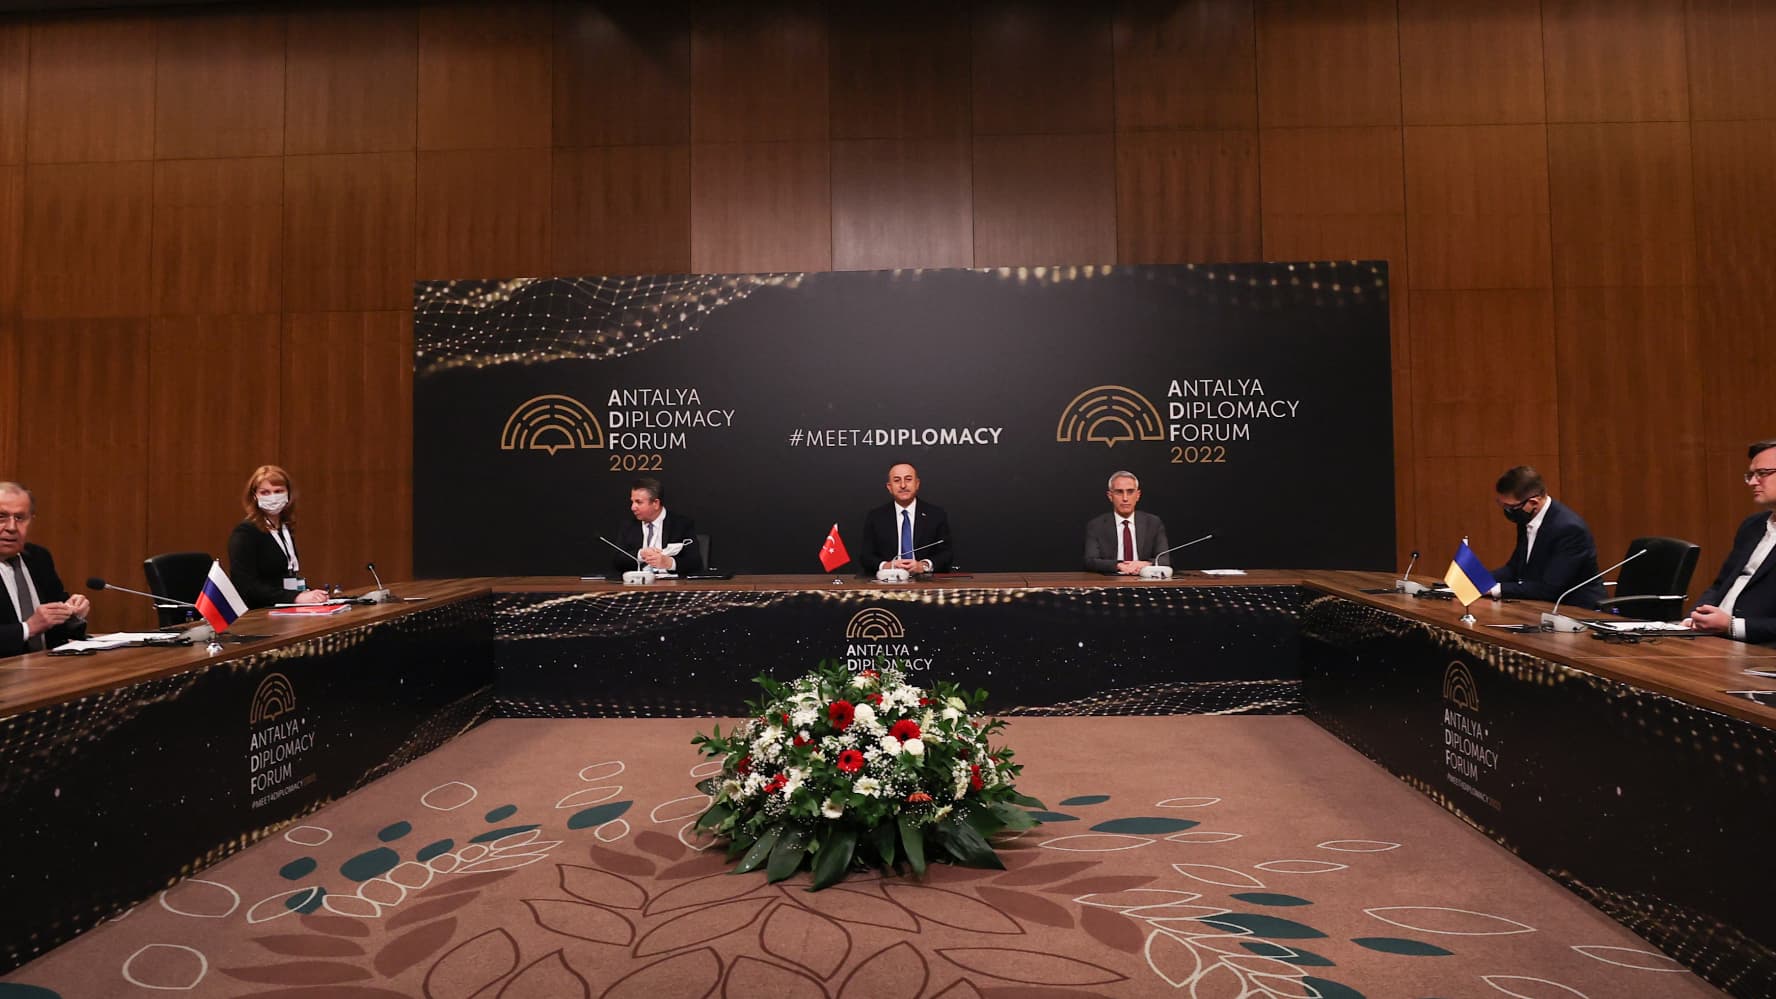 después de la reunión de Antalya, ¿hay todavía una forma de negociar el conflicto?